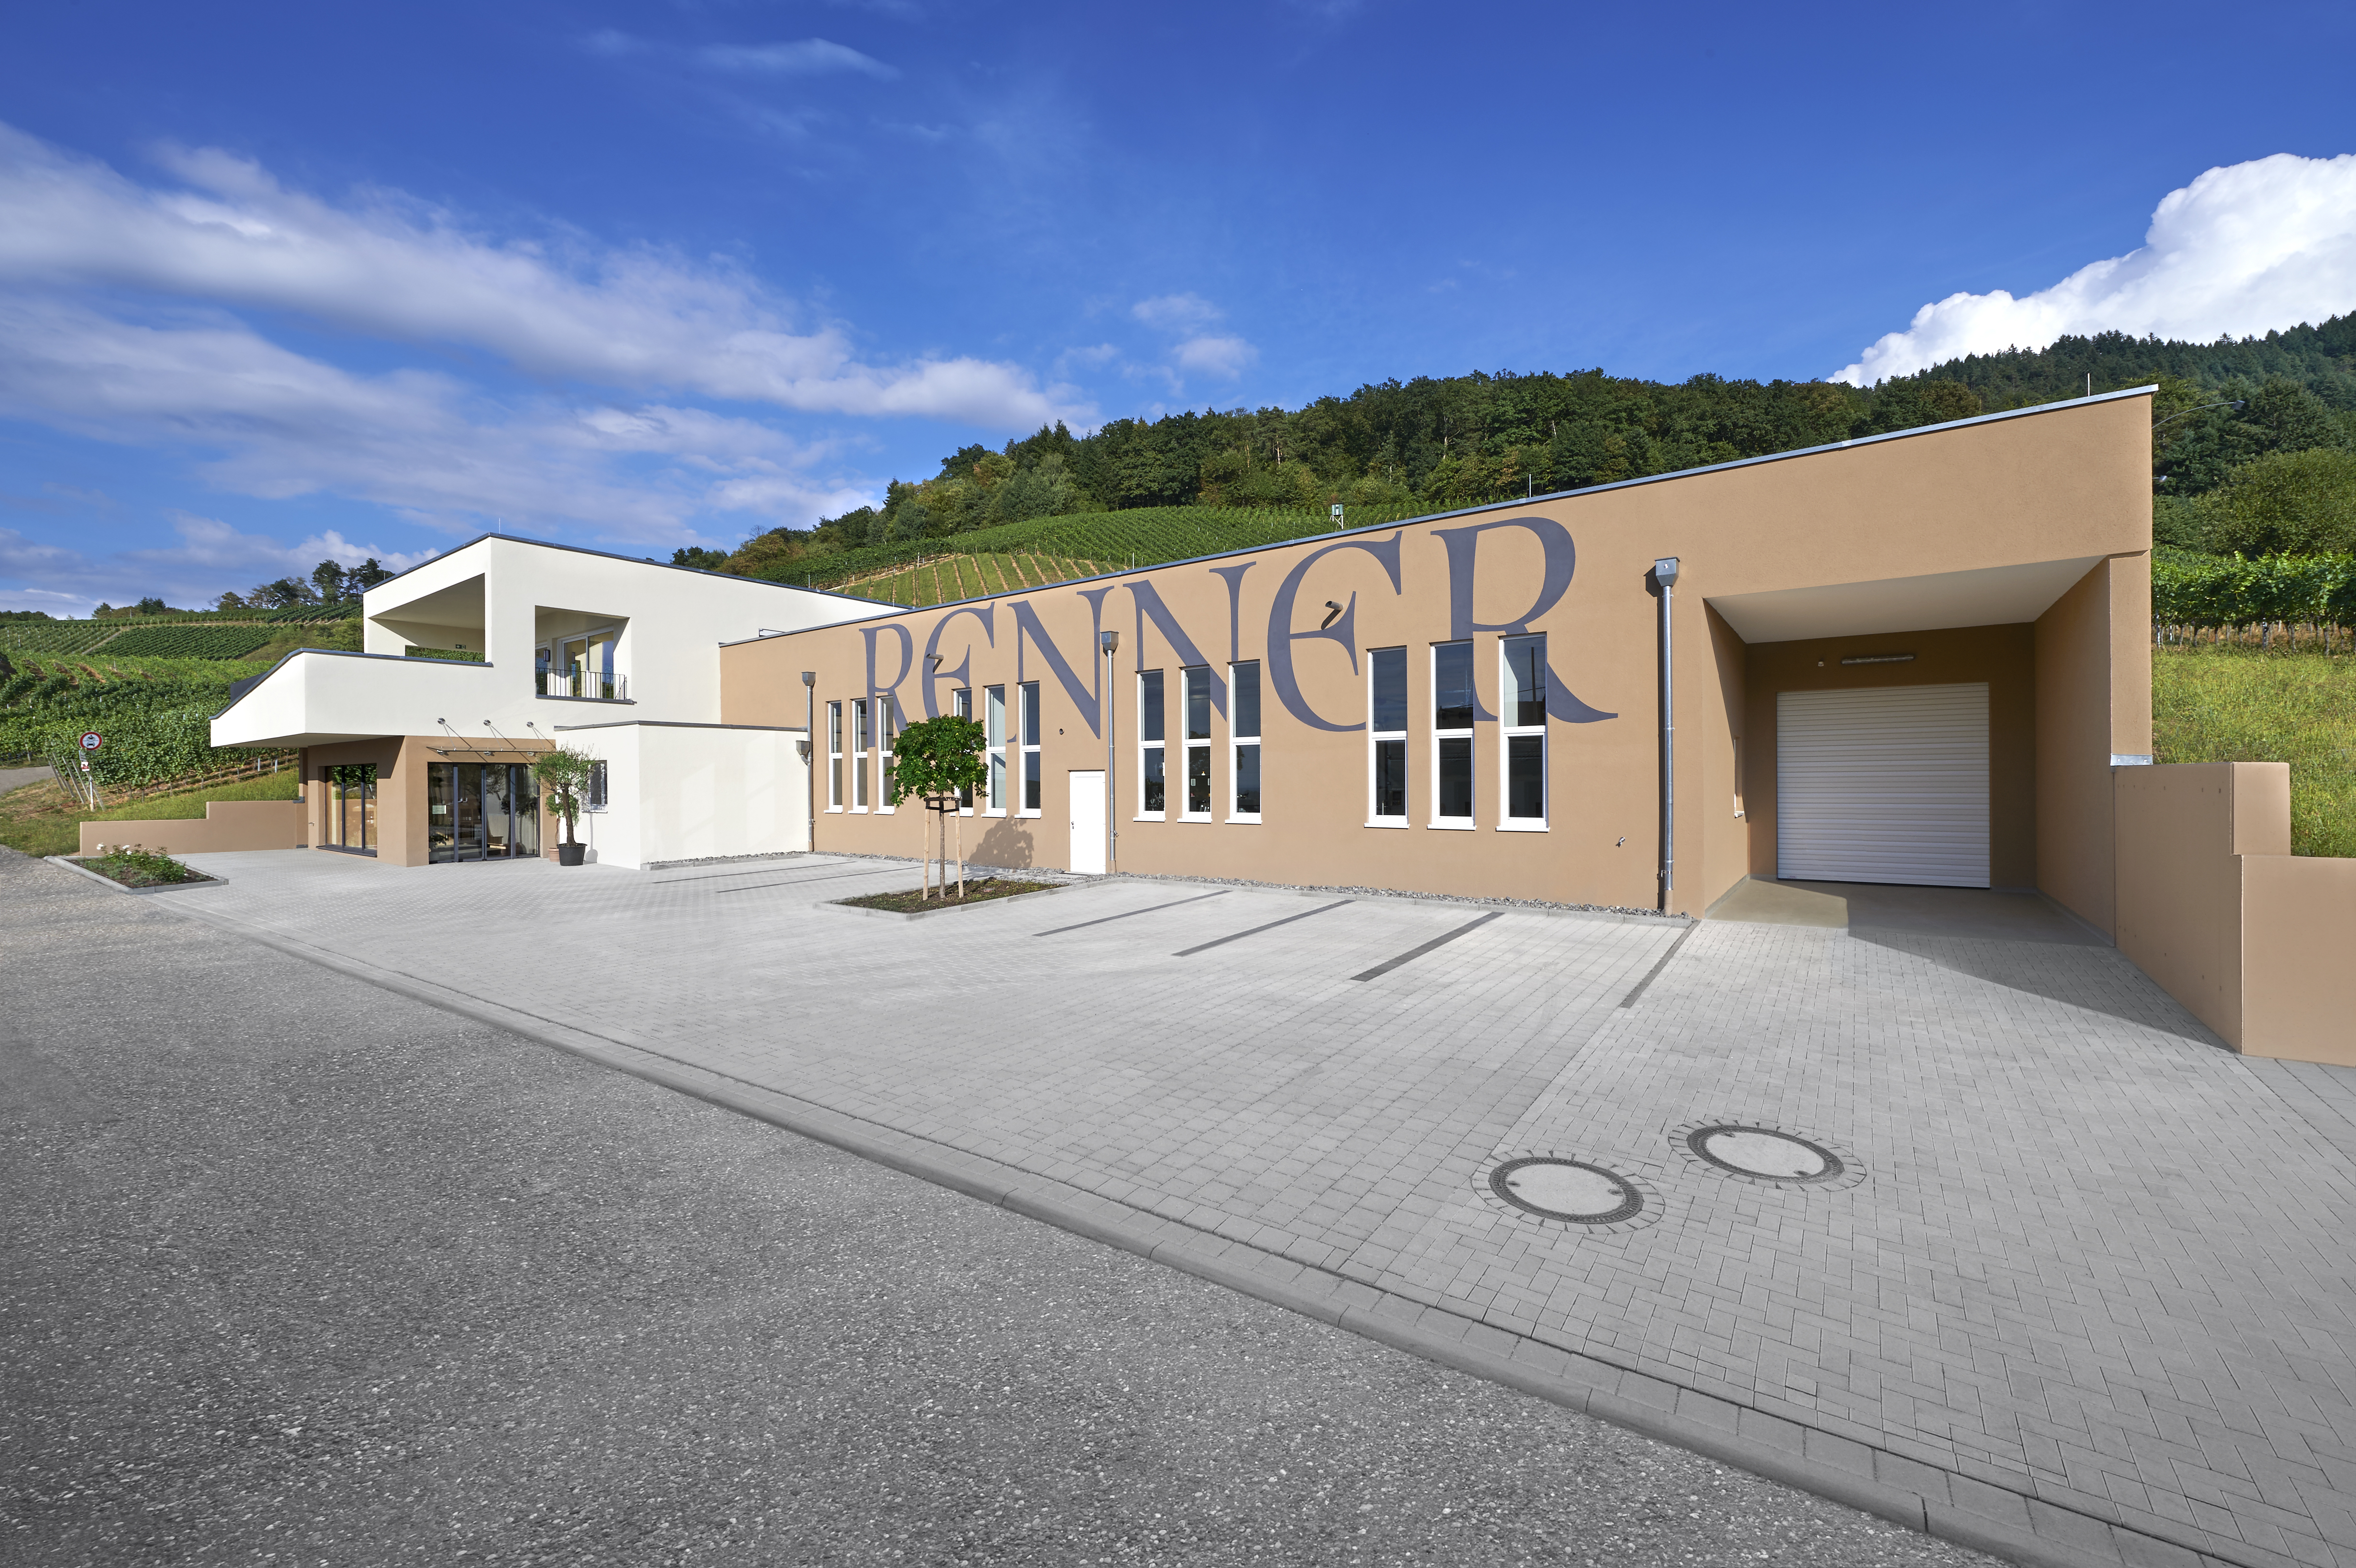 Für das Weingut Renner in Fessenbach haben wir im Jahr 2014 Produktions- und Verkaufsräume, sowie einen Proberaum gebaut.